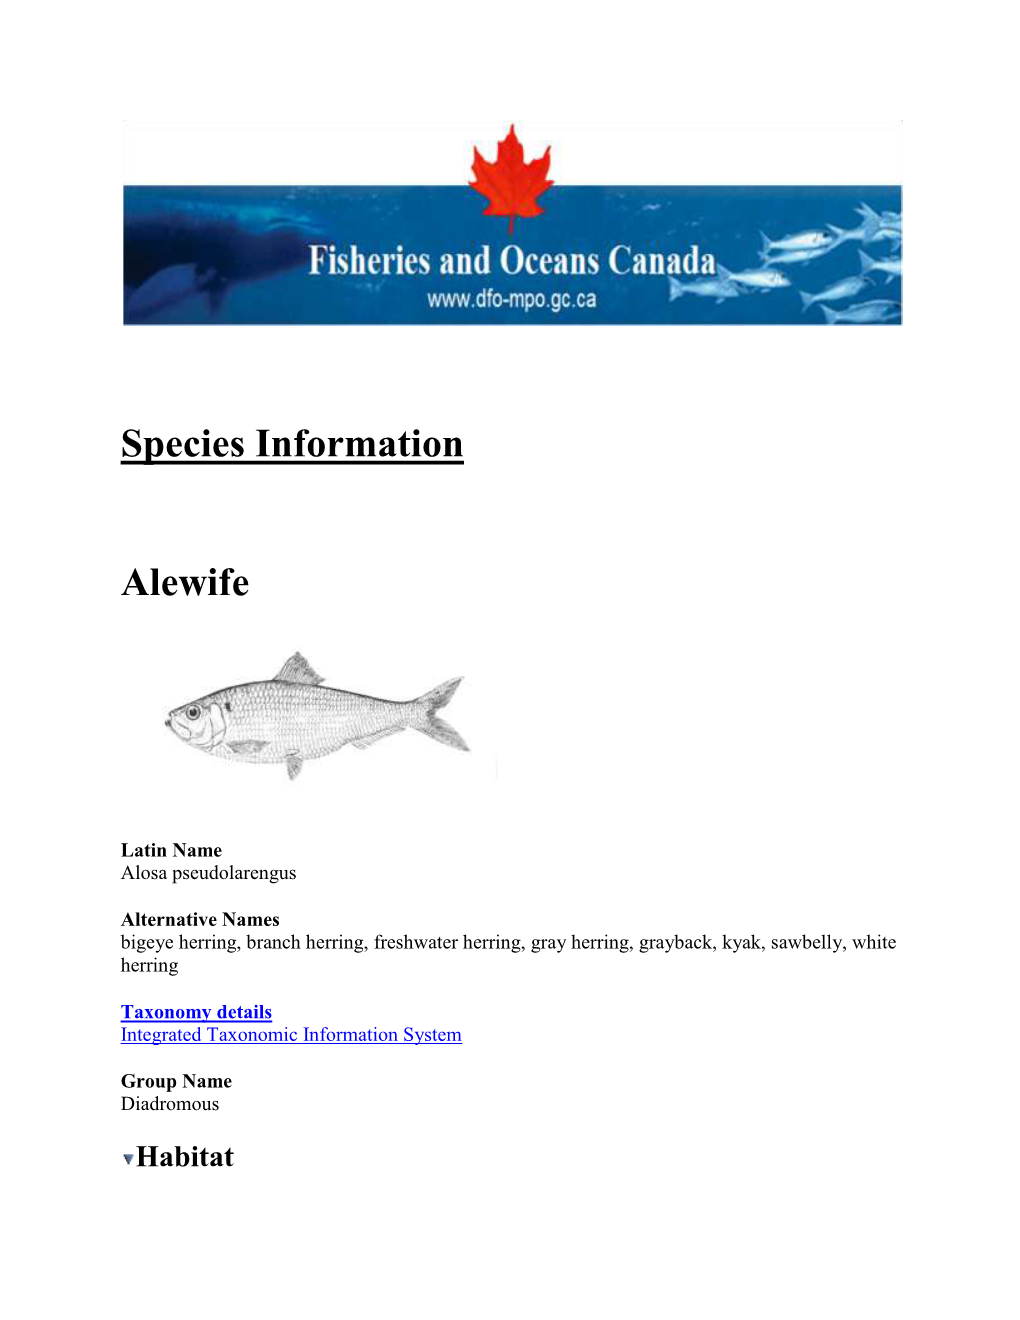 Aquatic Species Information